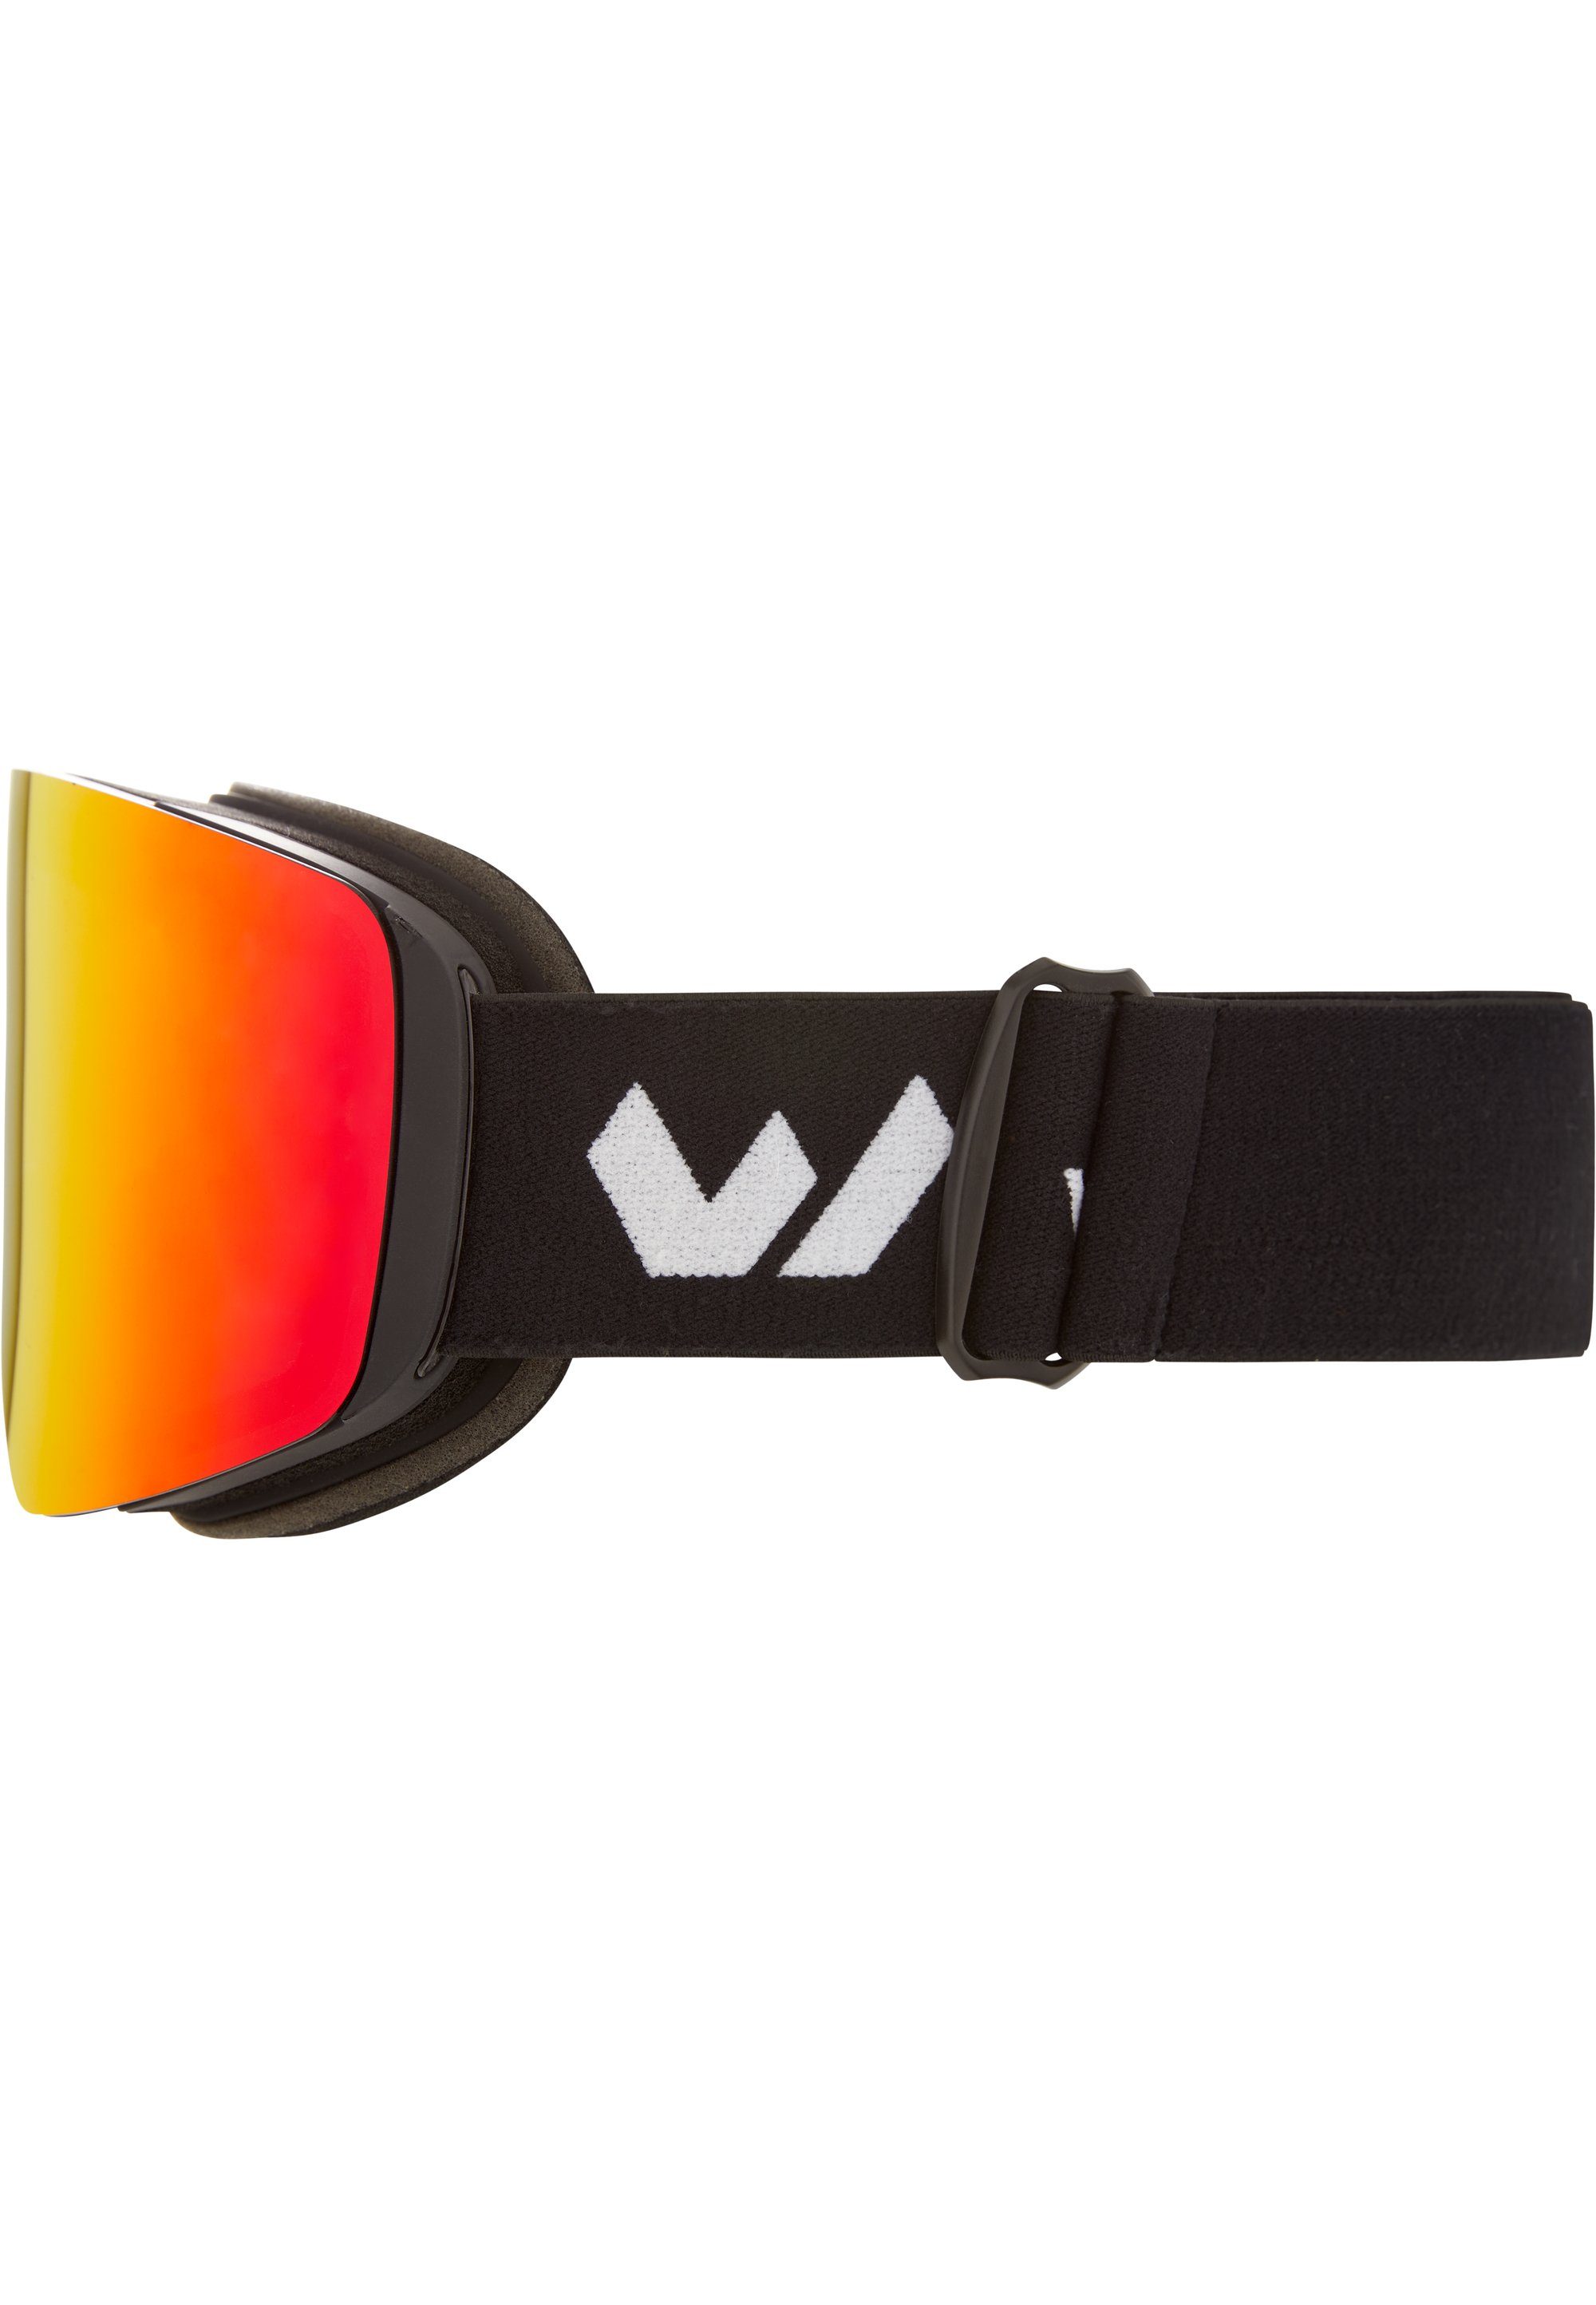 WHISTLER Skibrille WS7100, mit austauschbaren Gläsern